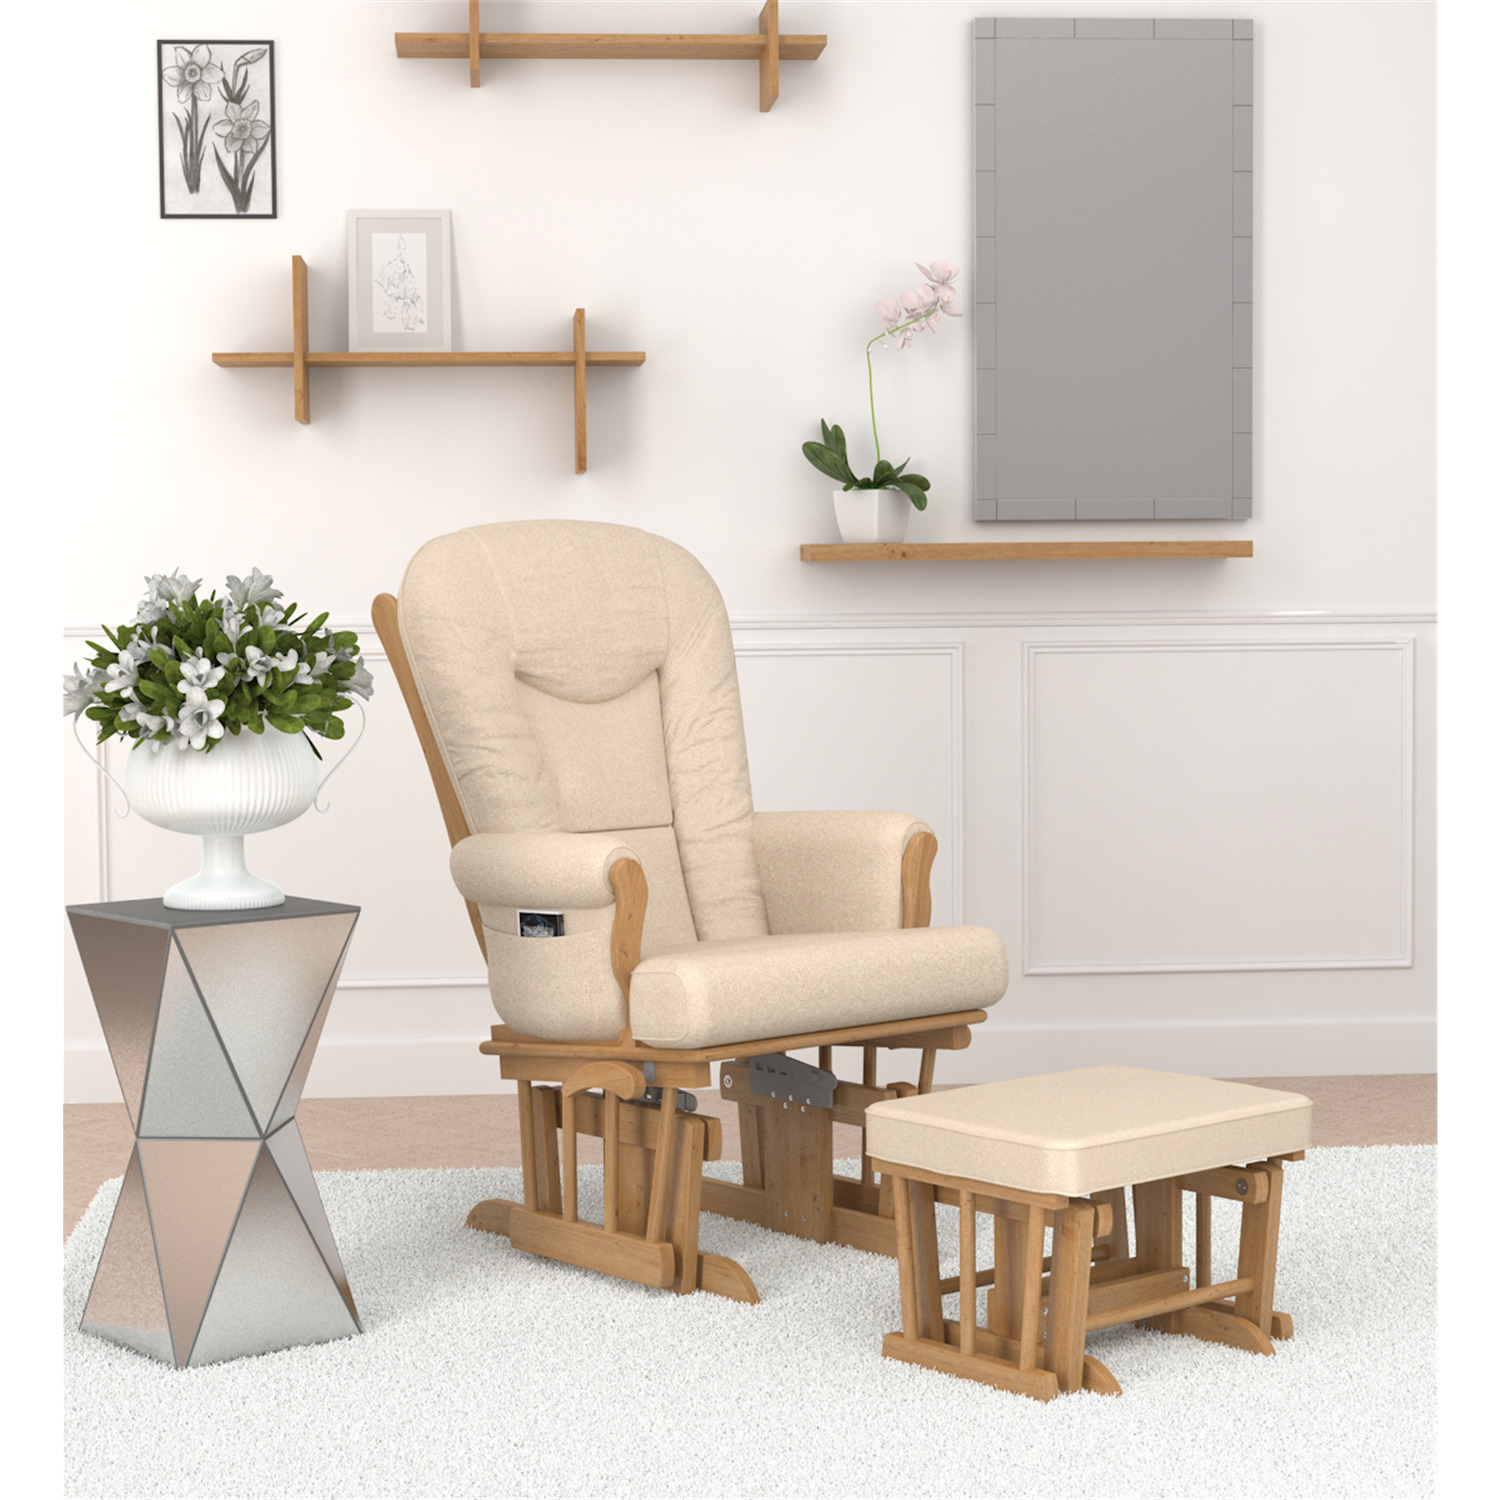 Naomi Home Storage & Wooden Legs Glider Rocking Chair, Cream - image 3 of 6